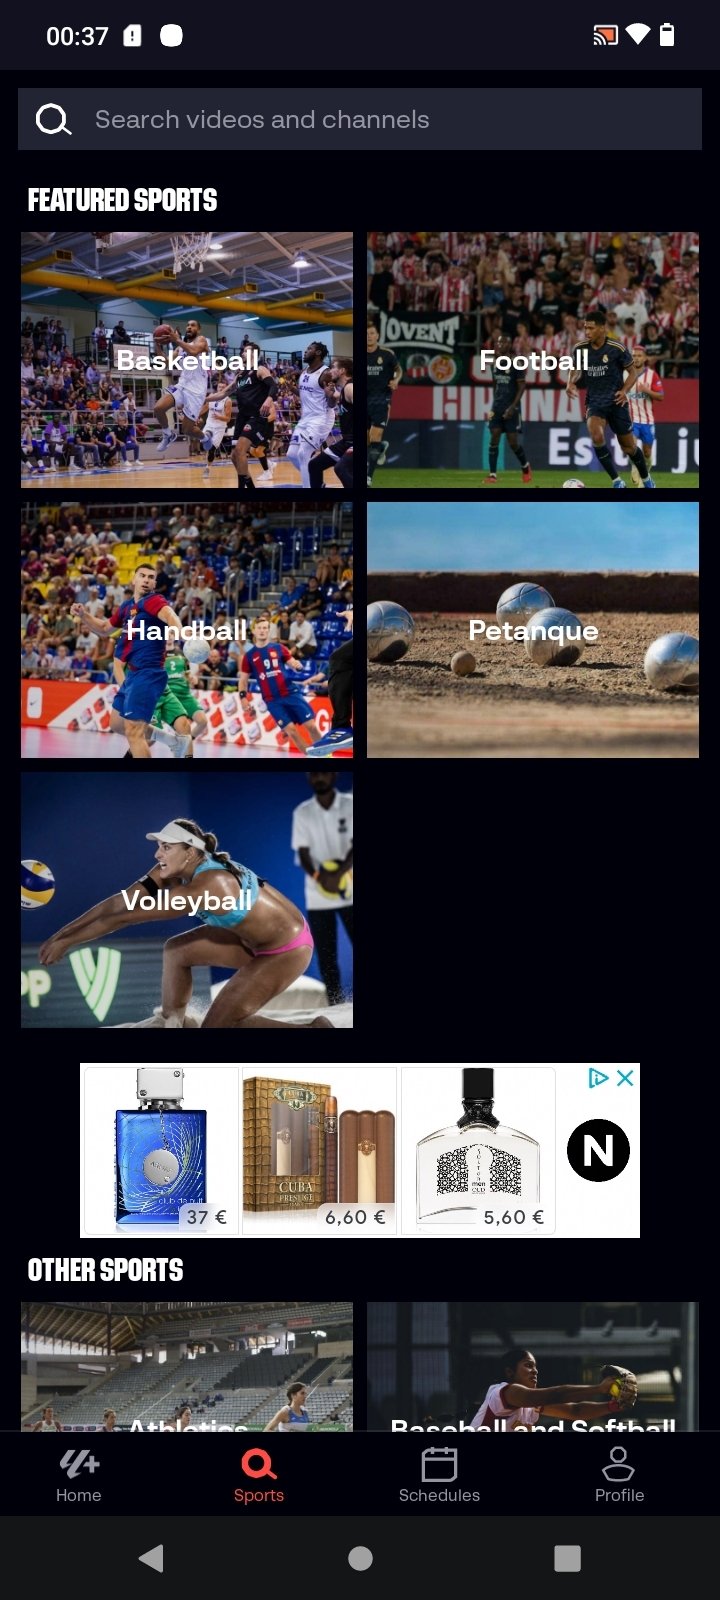 LaLiga impotente con Nodito, la app ilegal para ver todo el fútbol gratis  en Android